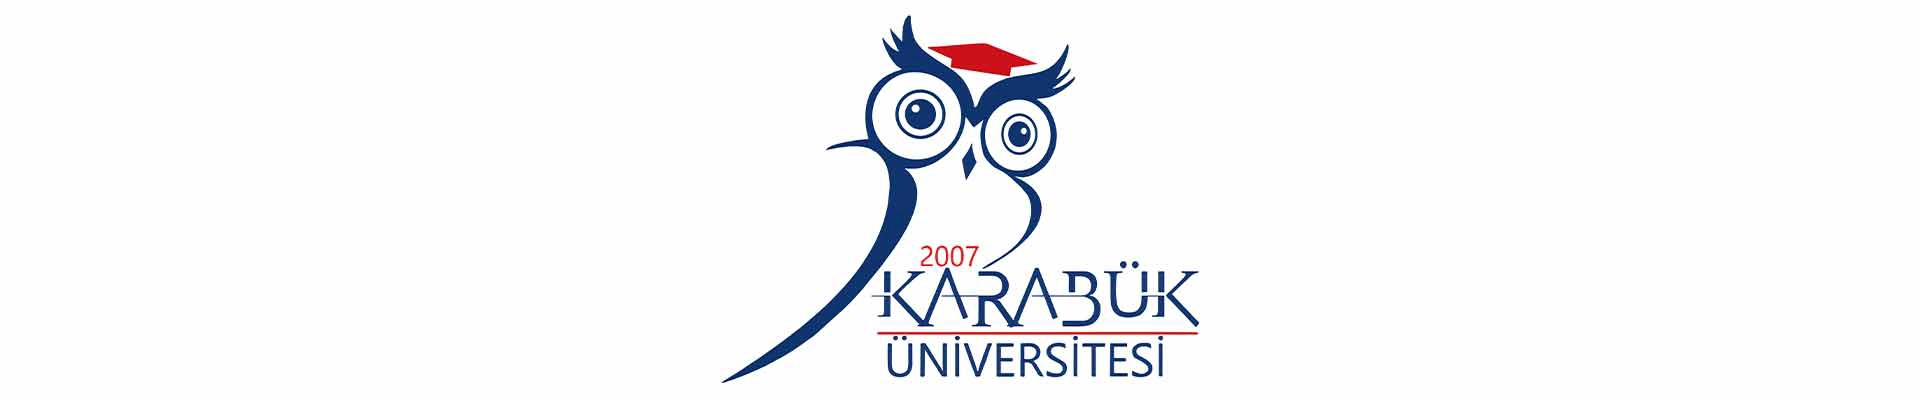 آزمون یوس دانشگاه کارابوک (Karabuk University)